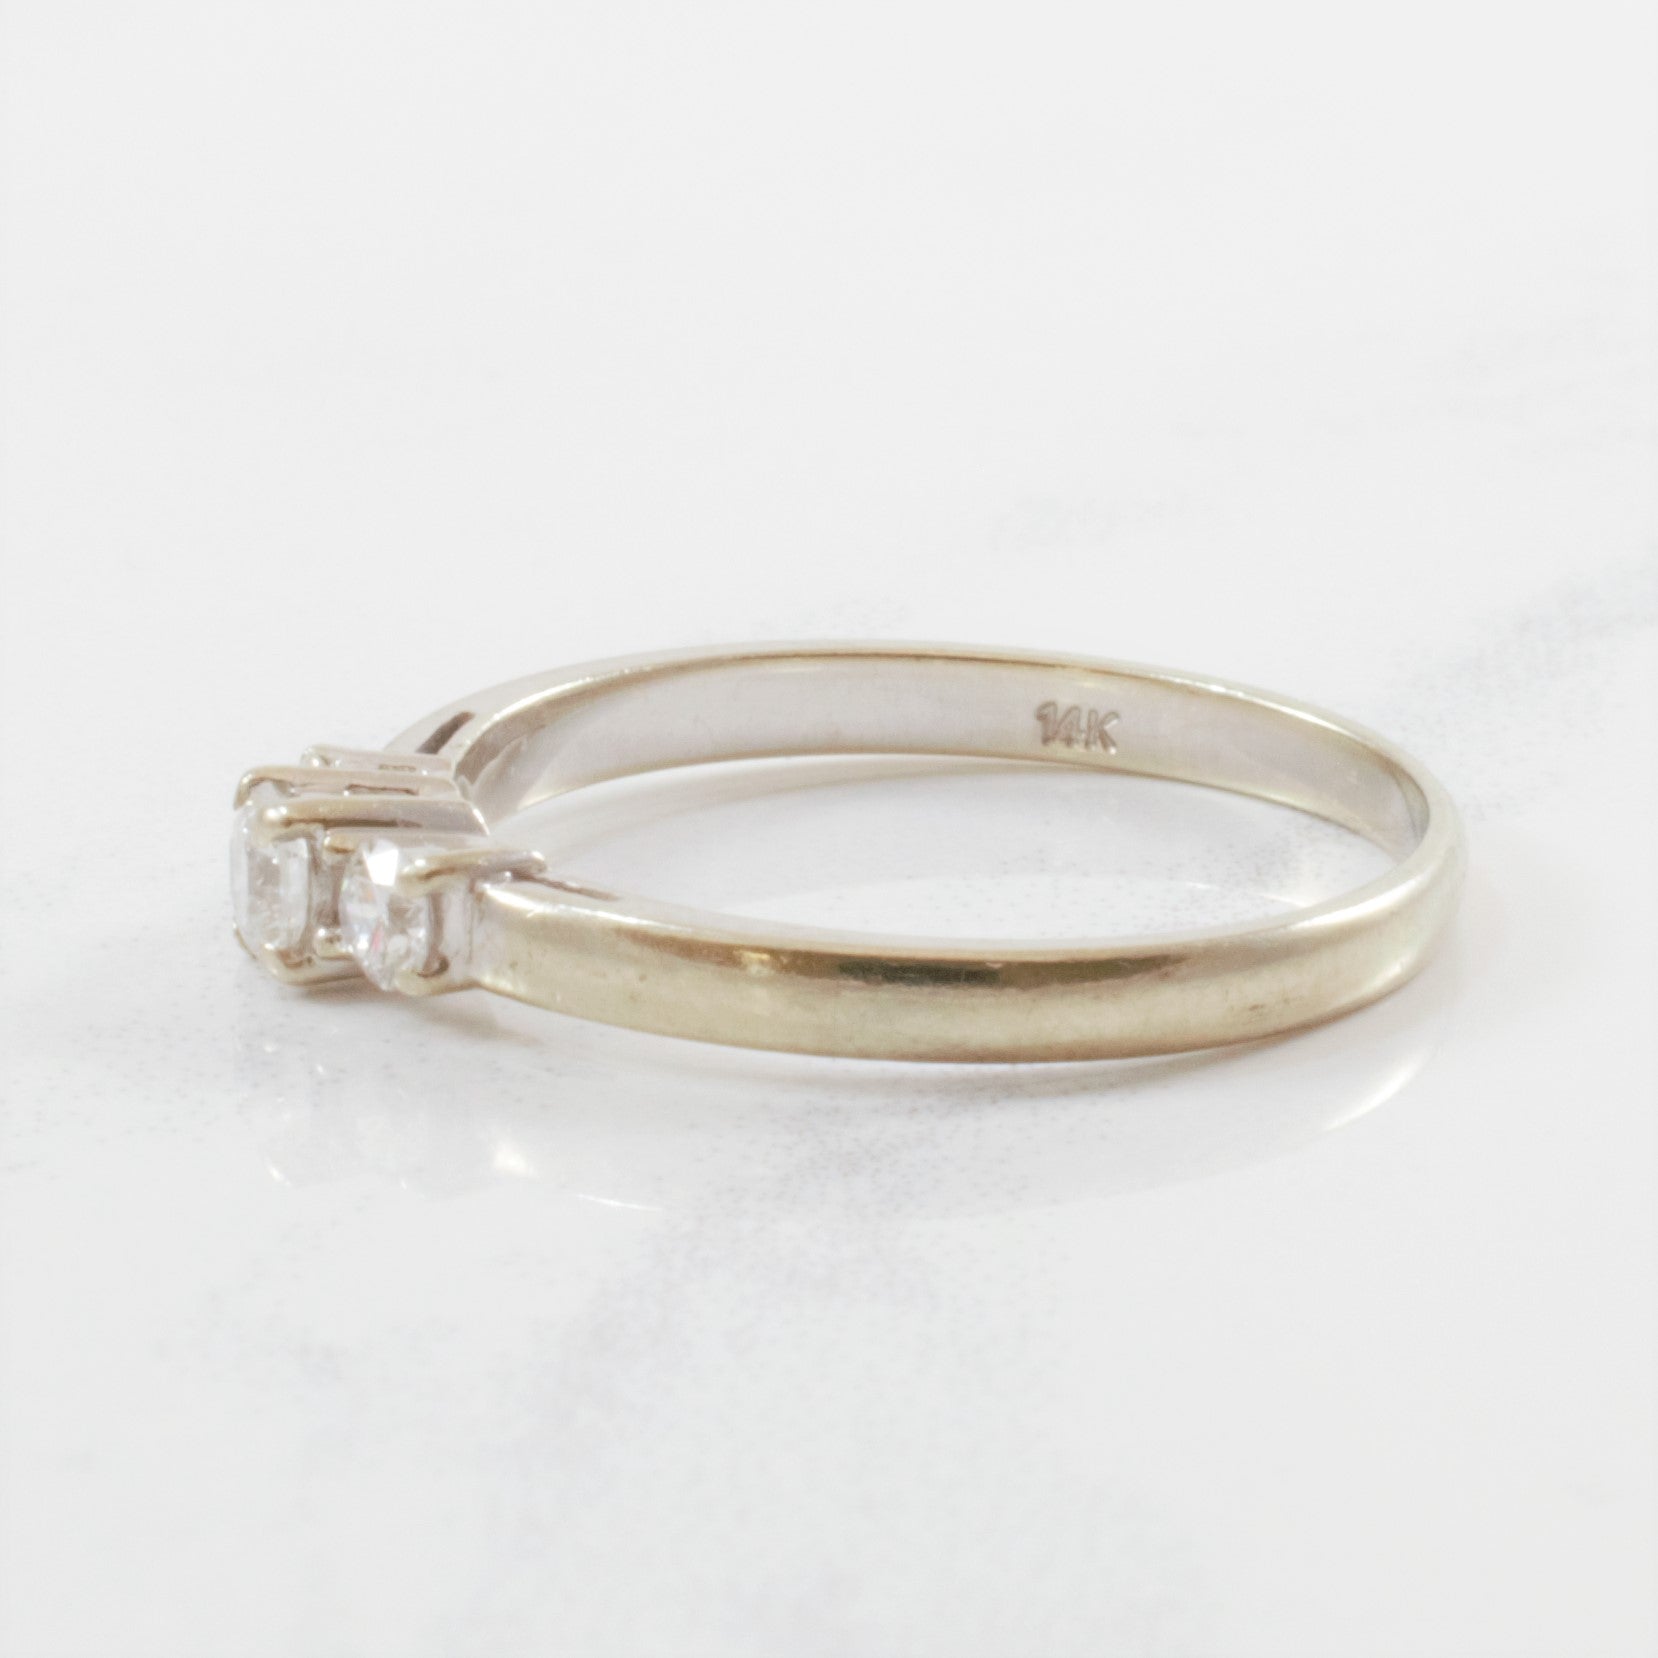 Petite Three Stone Diamond Ring | 0.23 ctw | SZ 6 |